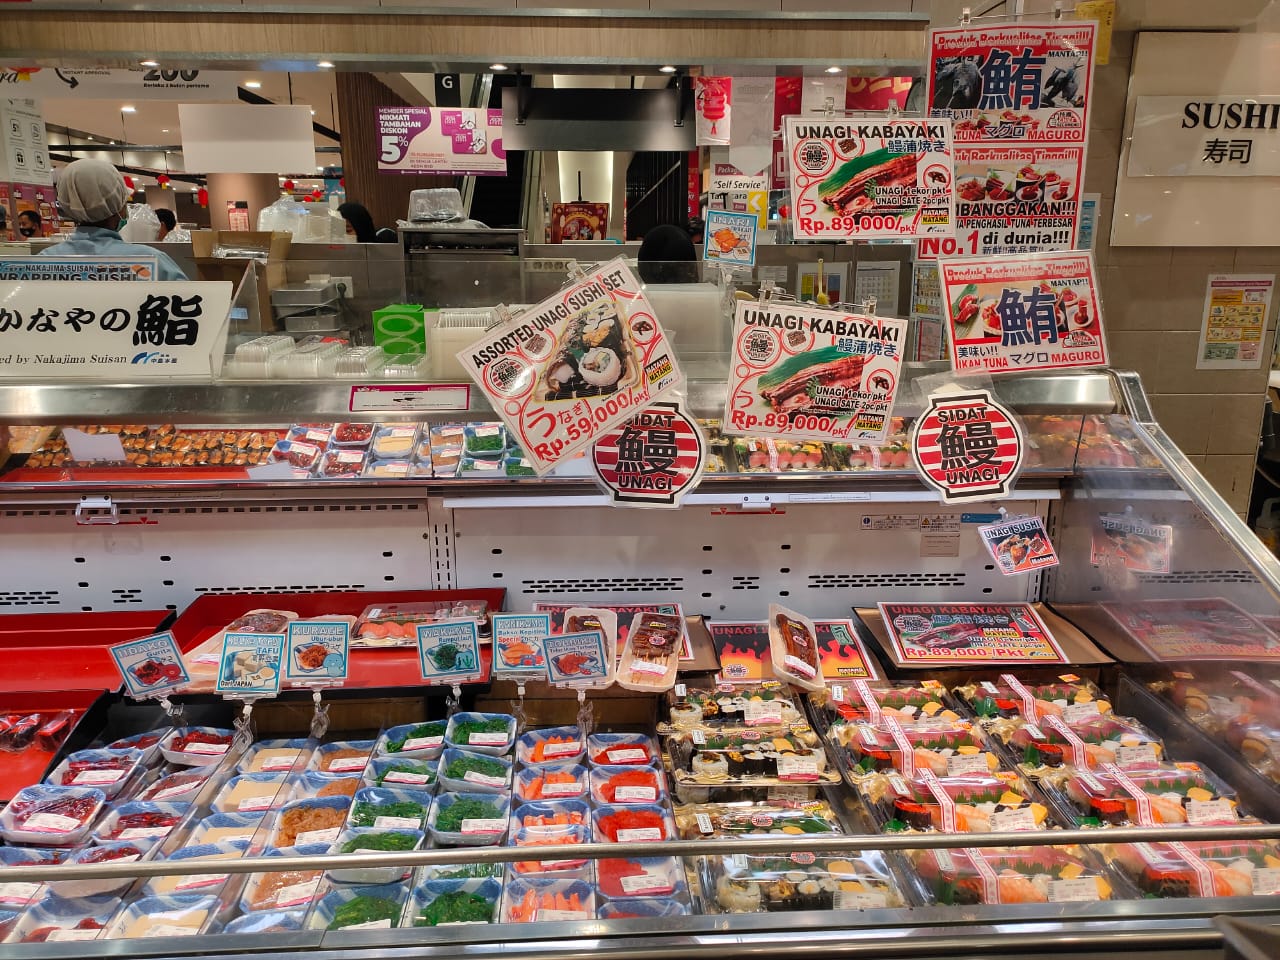 Sejumlah sushi yang disediakan dengan varian yang beragam di Aeon Mall BSD City, Tangerang Selatan, Selasa (23/02/2021).